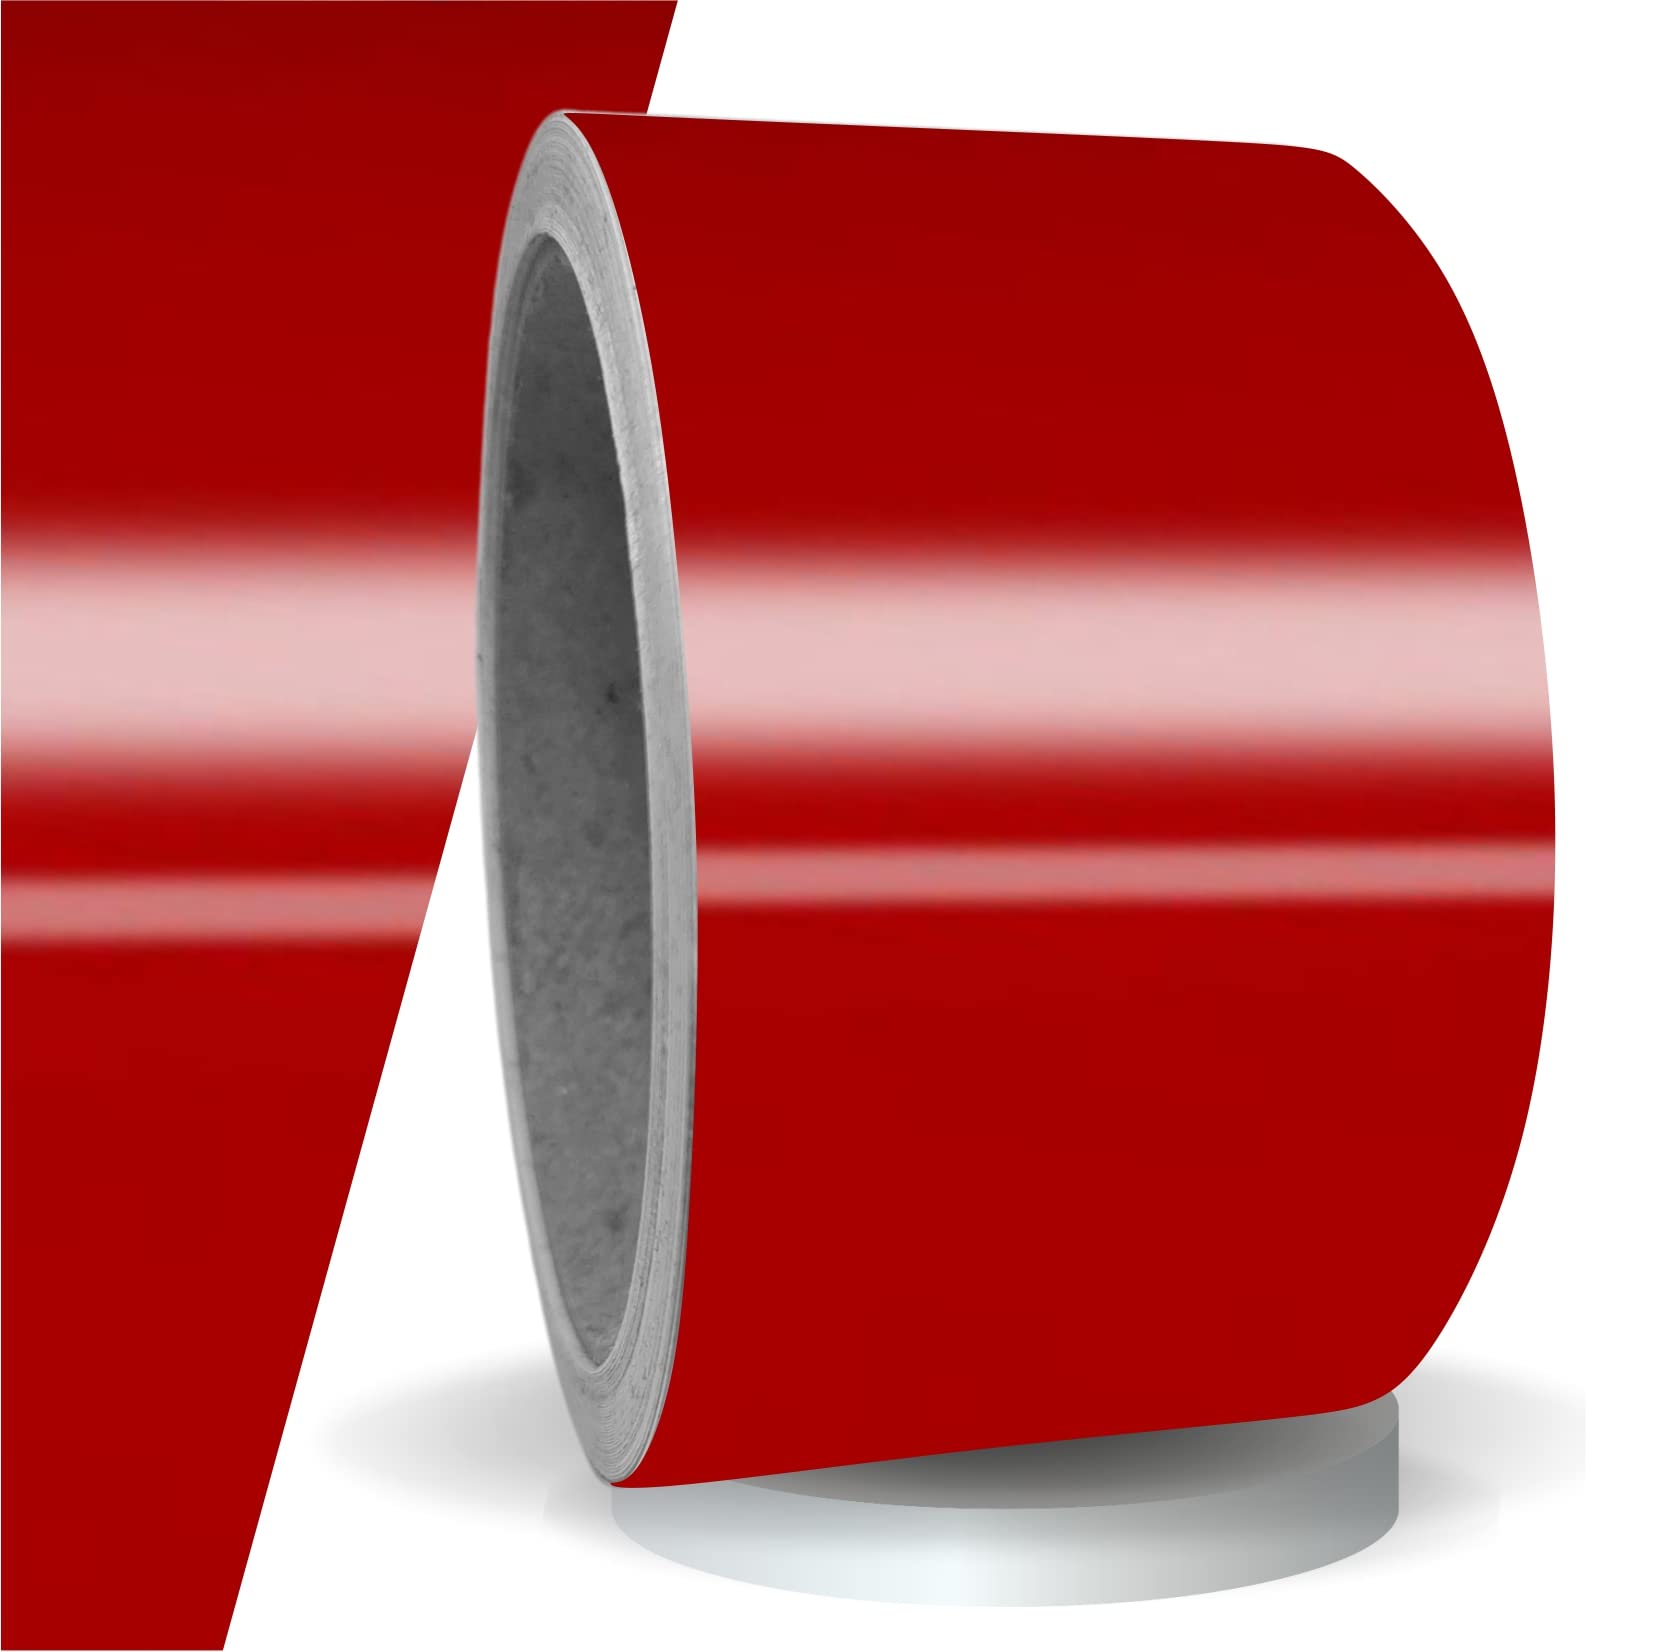 siviwonder Zierstreifen rot Karmin Glanz in 50mm Breite und 10 m Länge Aufkleber Folie für Auto Boot Jetski Modellbau Klebeband Dekorstreifen - Karminrot von siviwonder